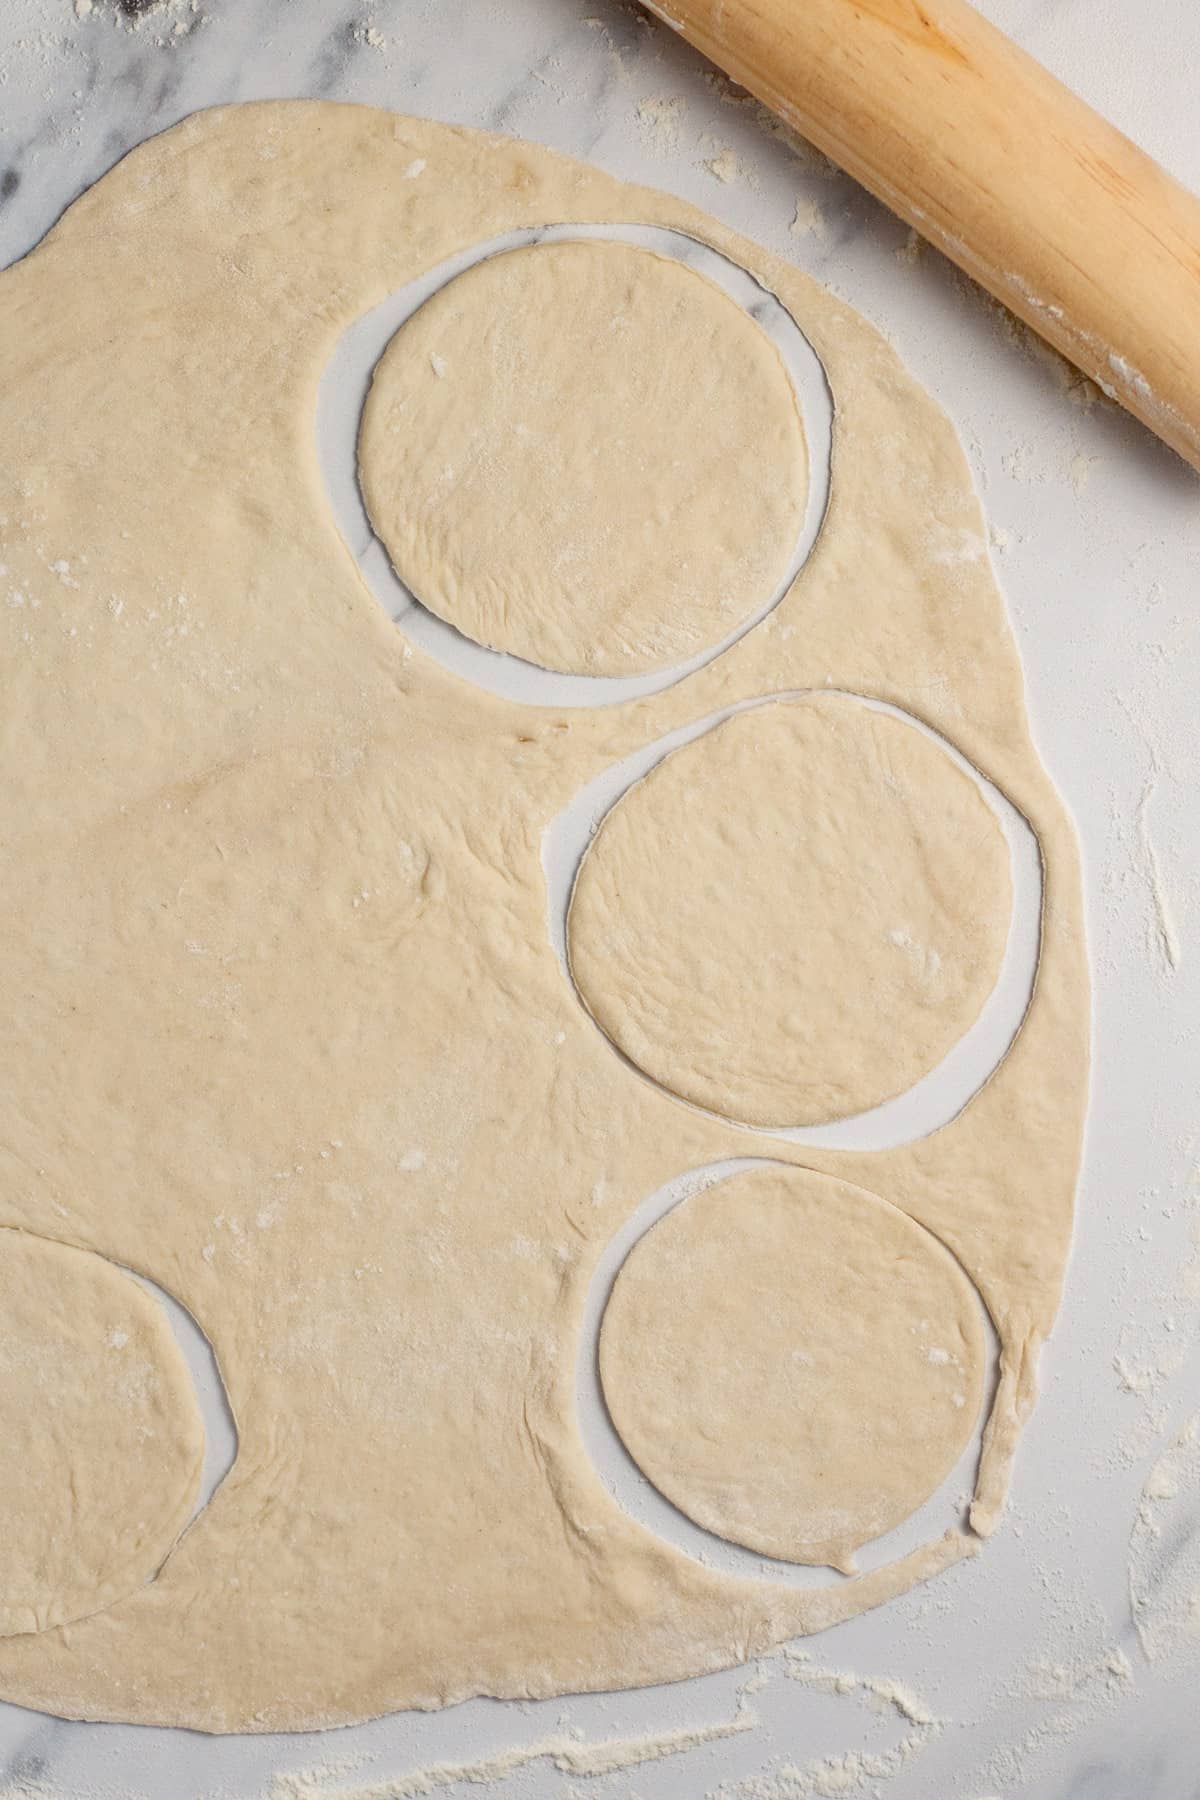 pizza dough cut into circles